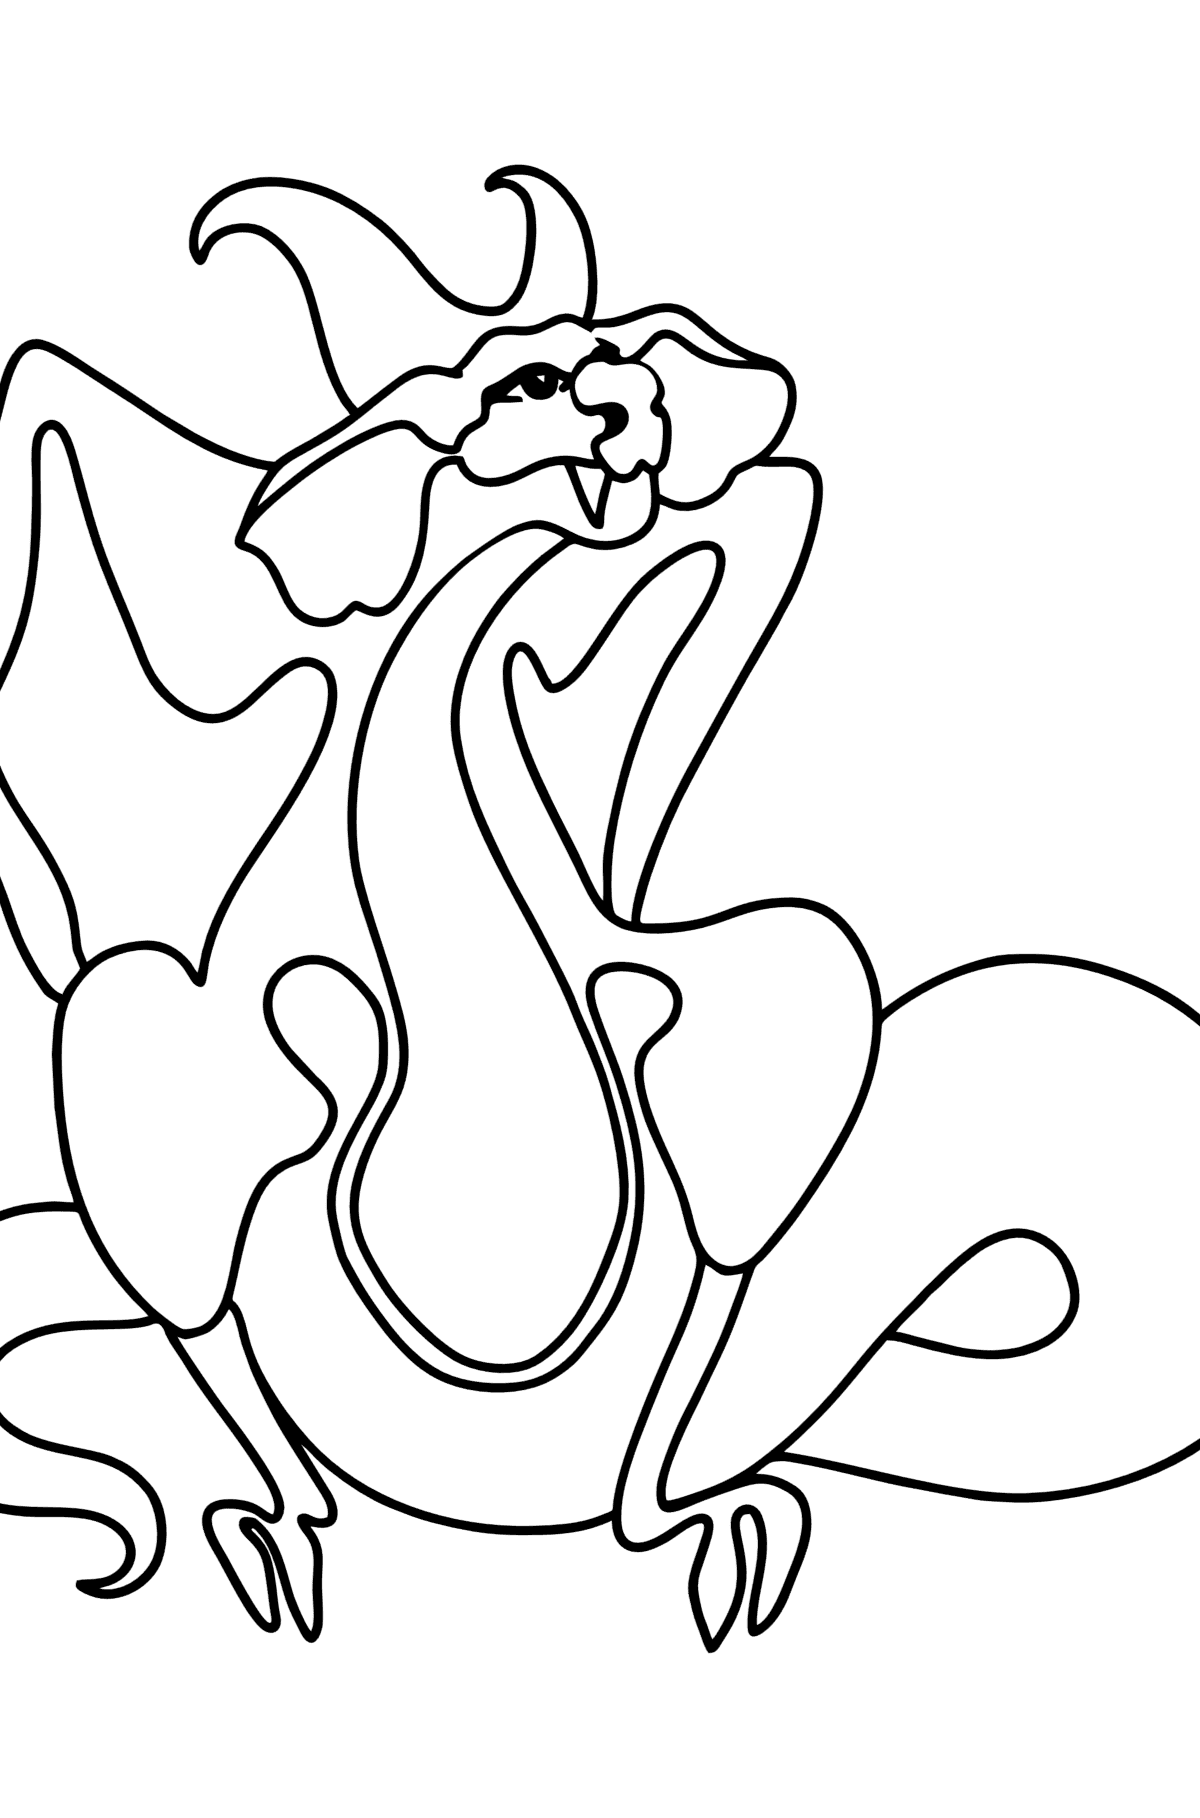 Desen de colorat dragon trist - Desene de colorat pentru copii